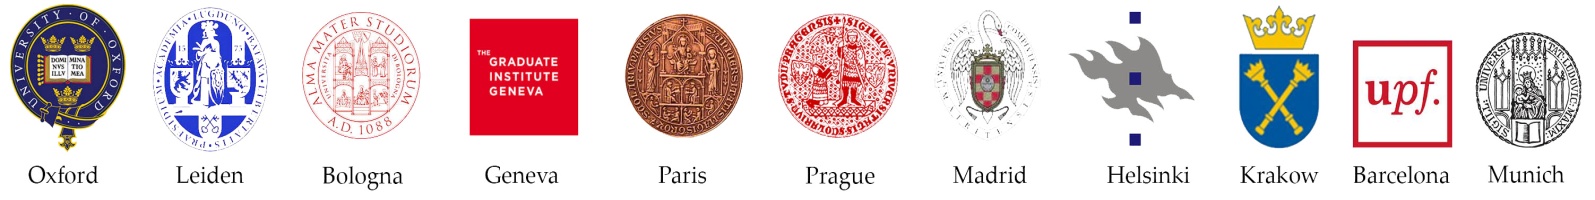 Europaeum logos de Universidades miembro